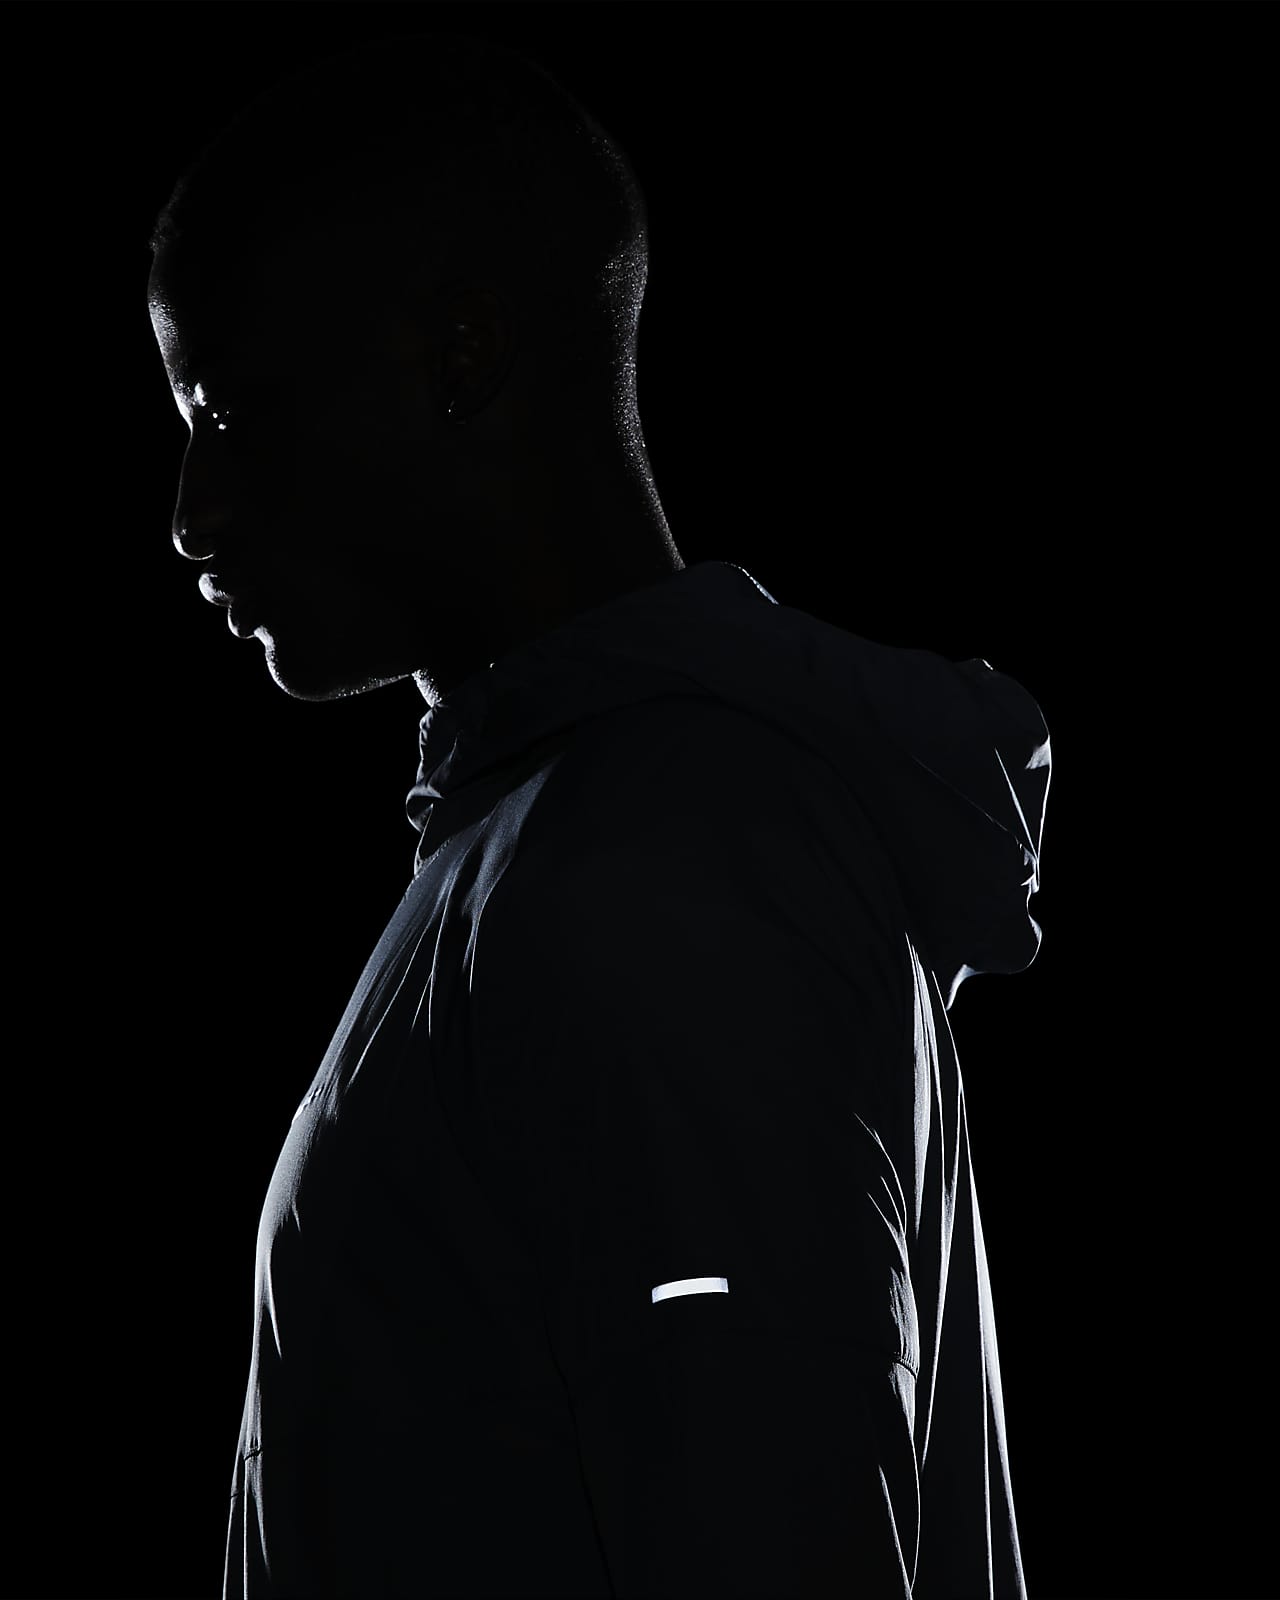 Nike Performance MILER - Veste de running - black/noir 